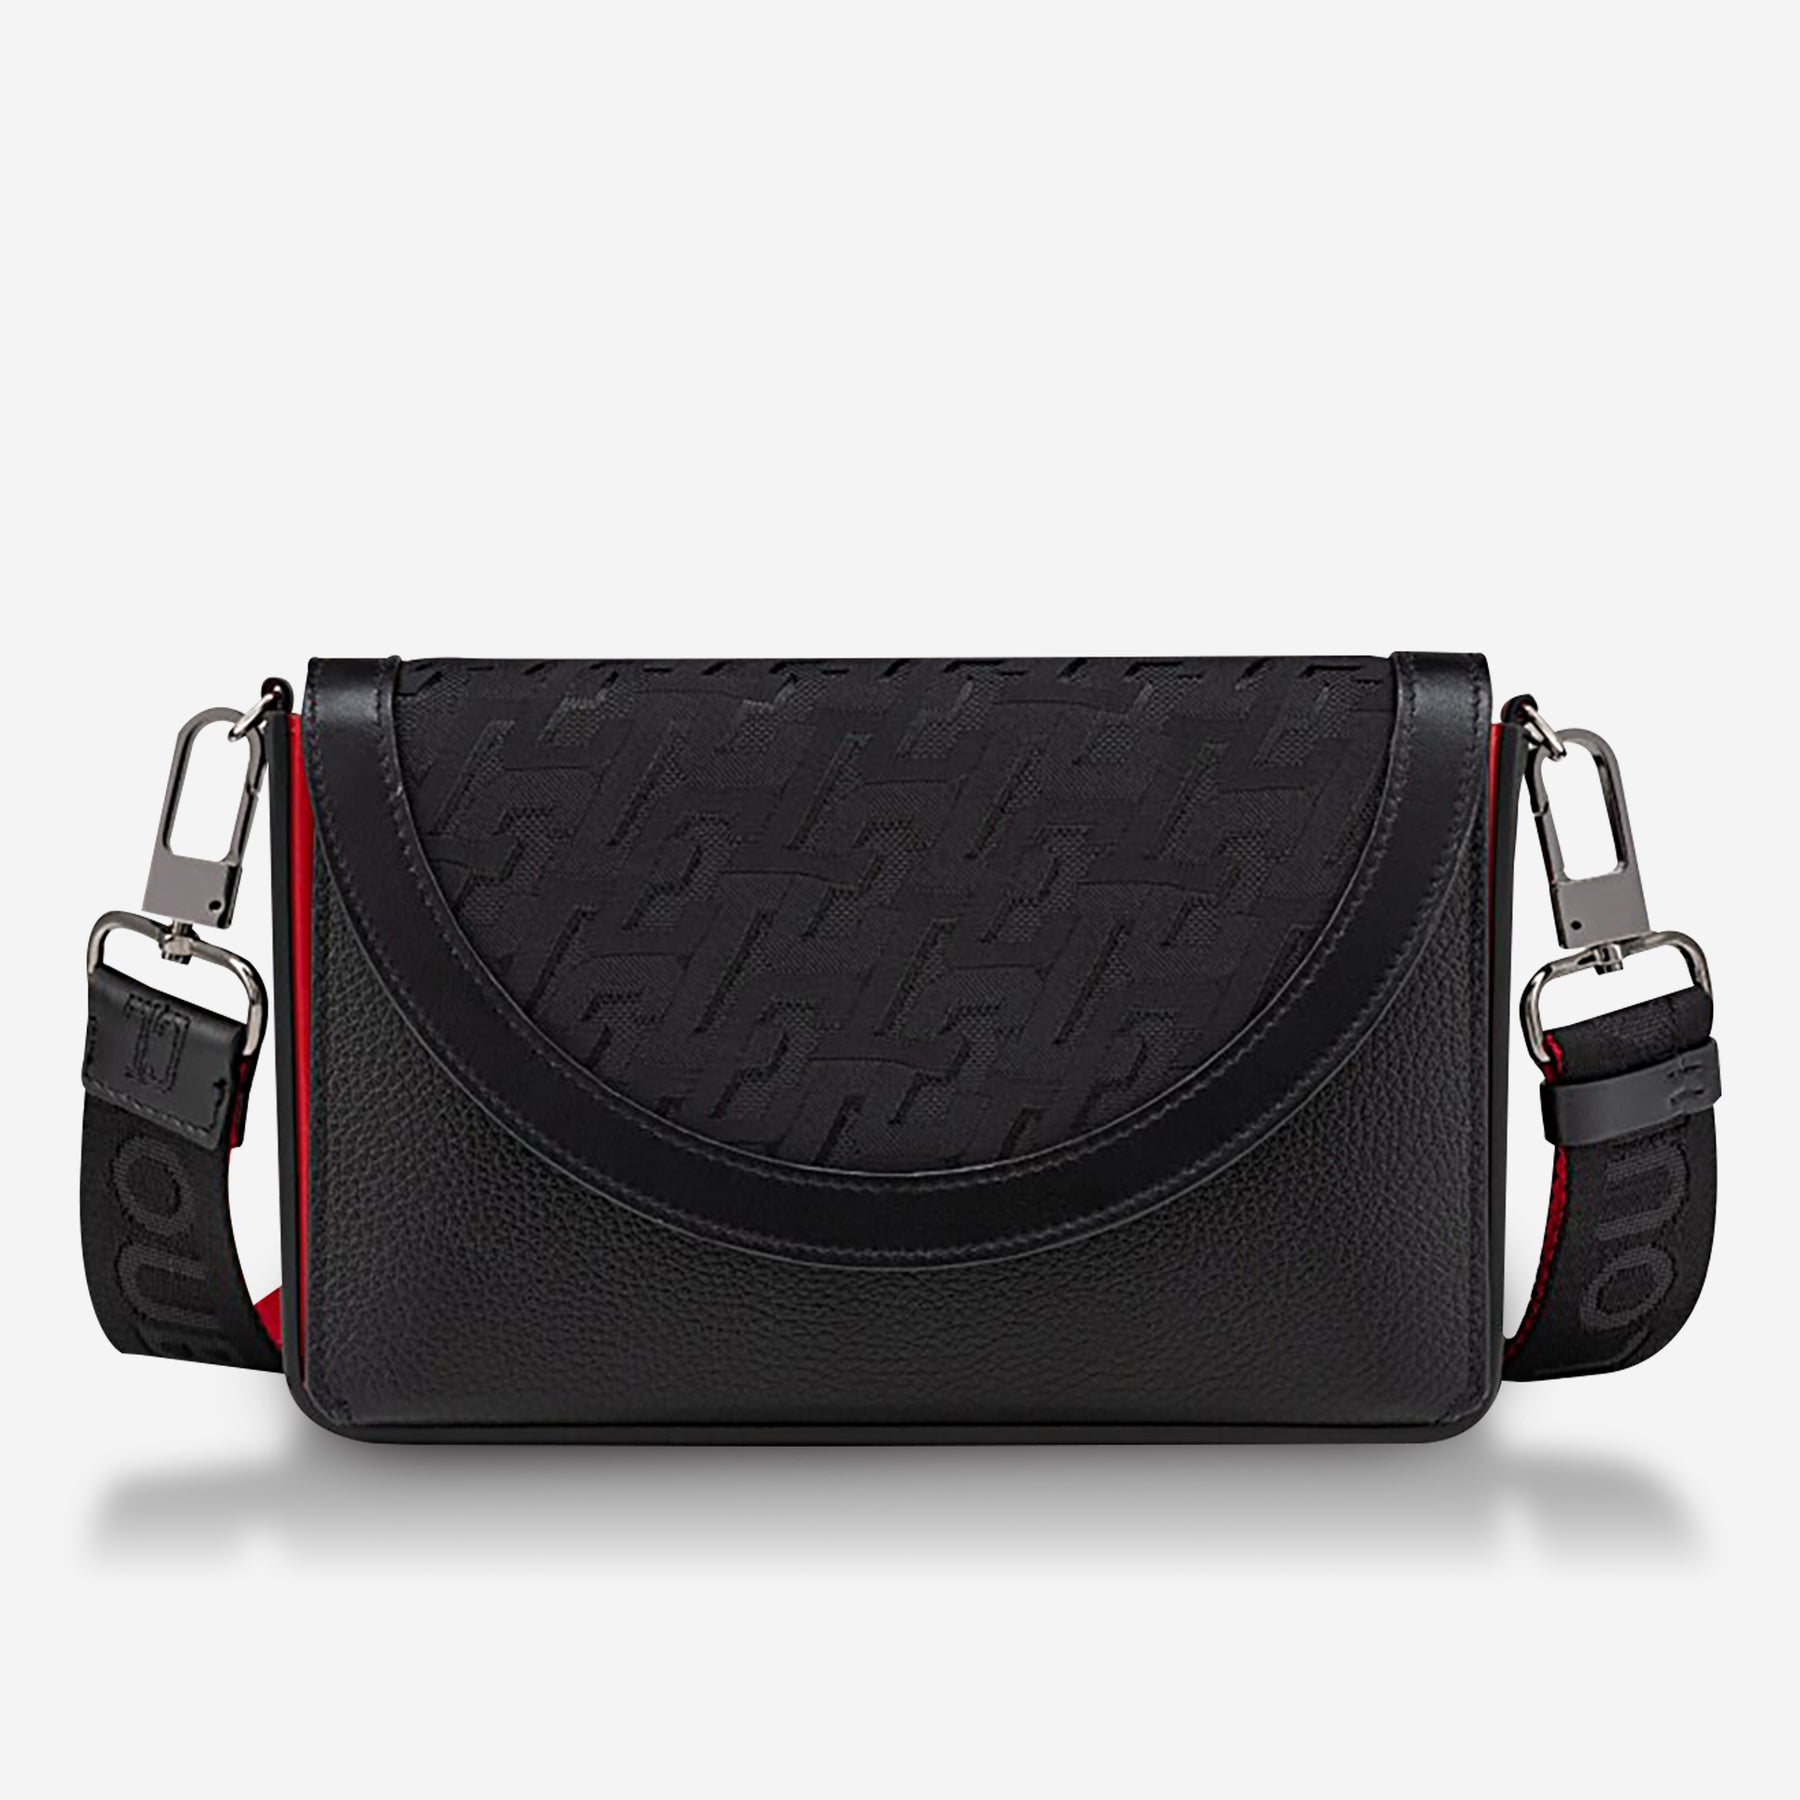 Louis Vuitton Avenue Sling Bag Men Backpacks (Damier Graphite) price in UAE,  UAE